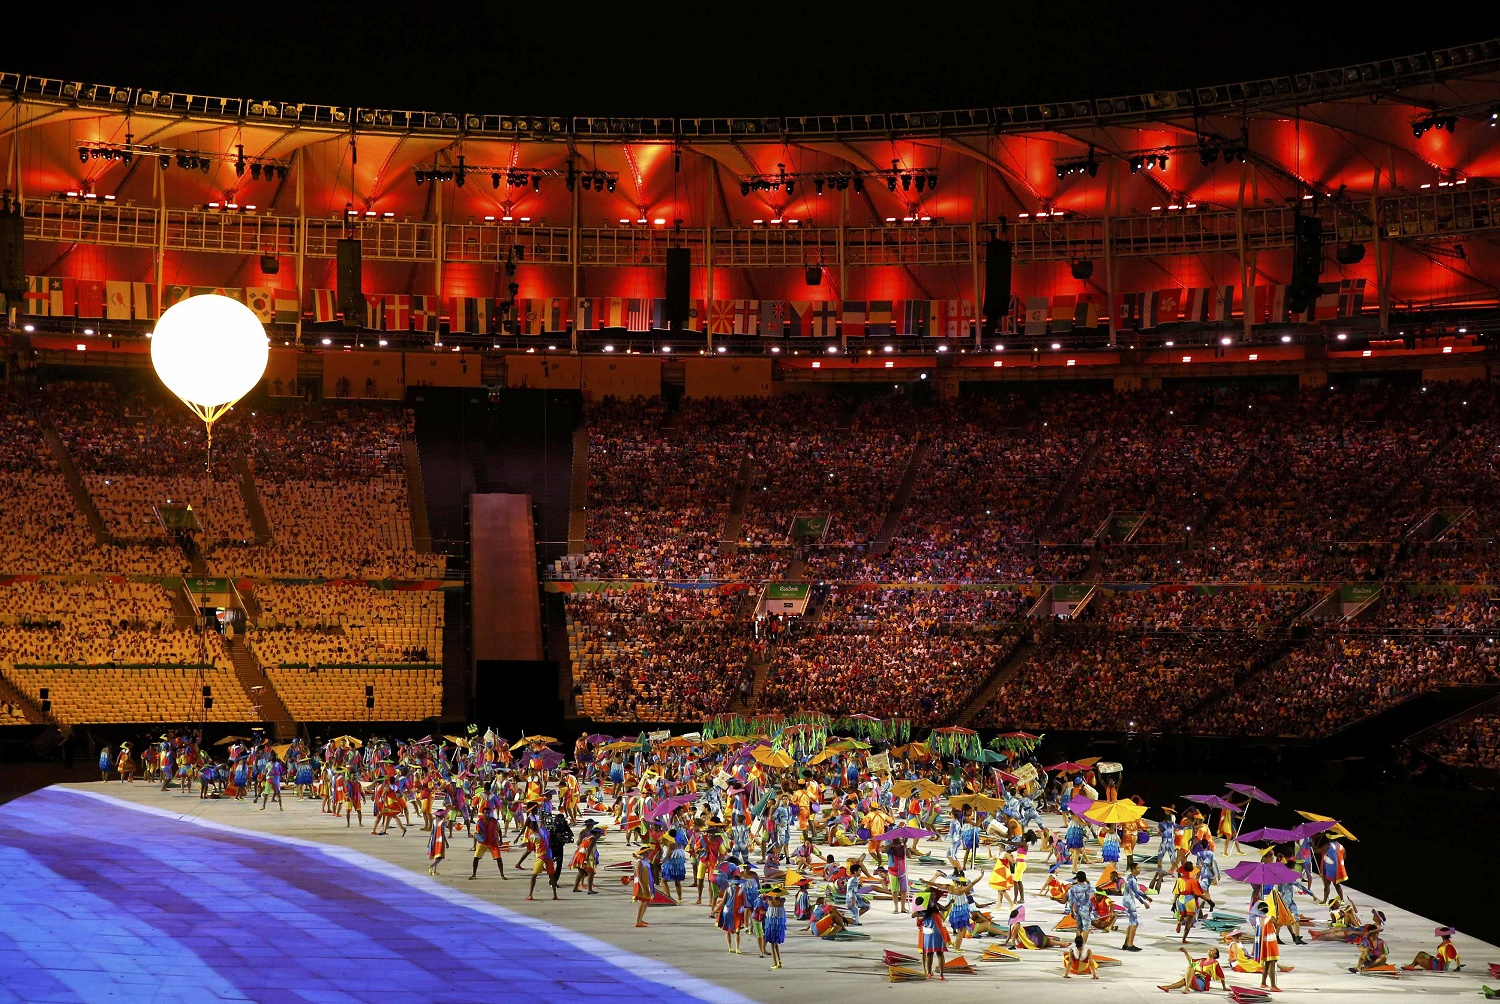 Pistoletazo de salida a los Juegos Paralímpicos de Río